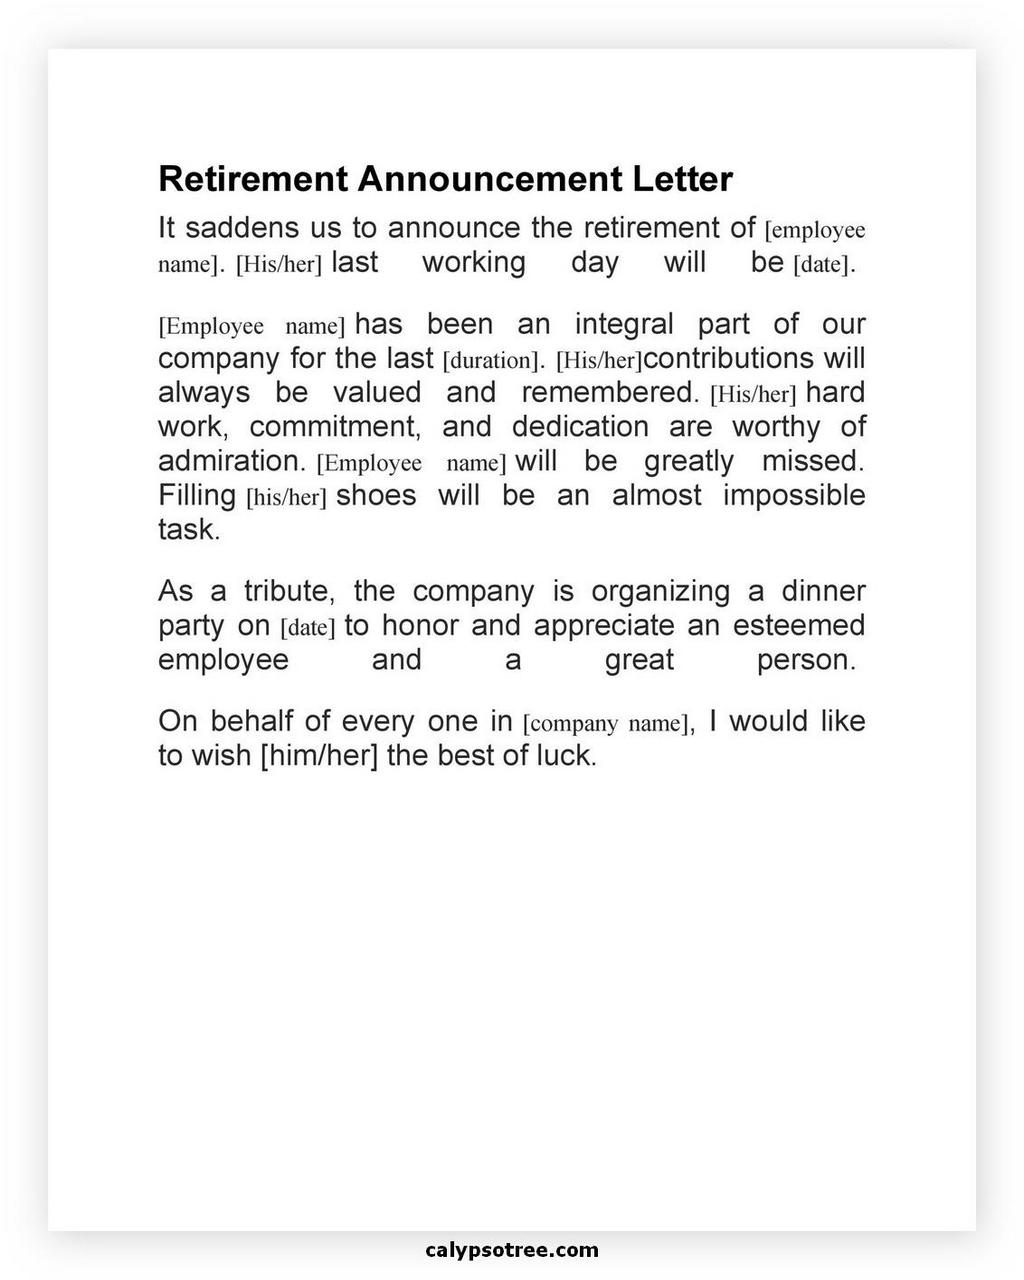 Retirement Announcement 01